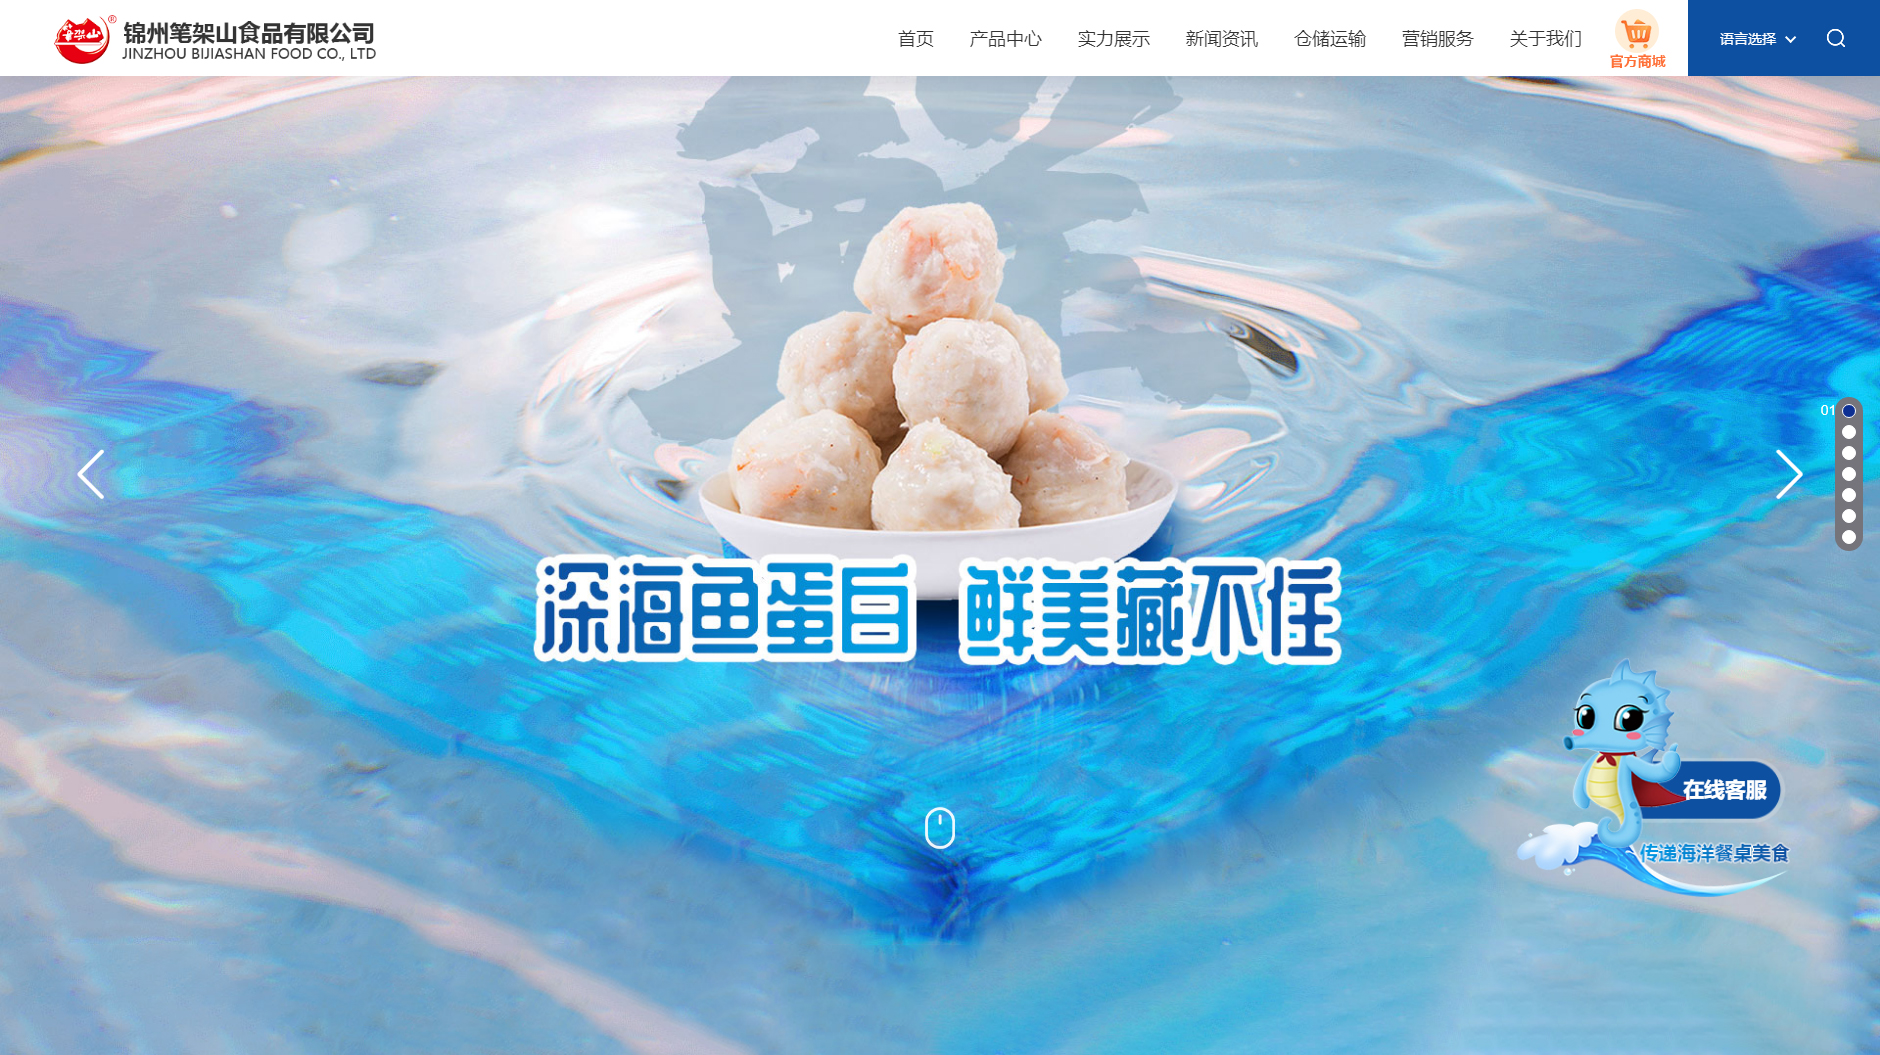 錦州筆架山食品有限公司網站設計圖